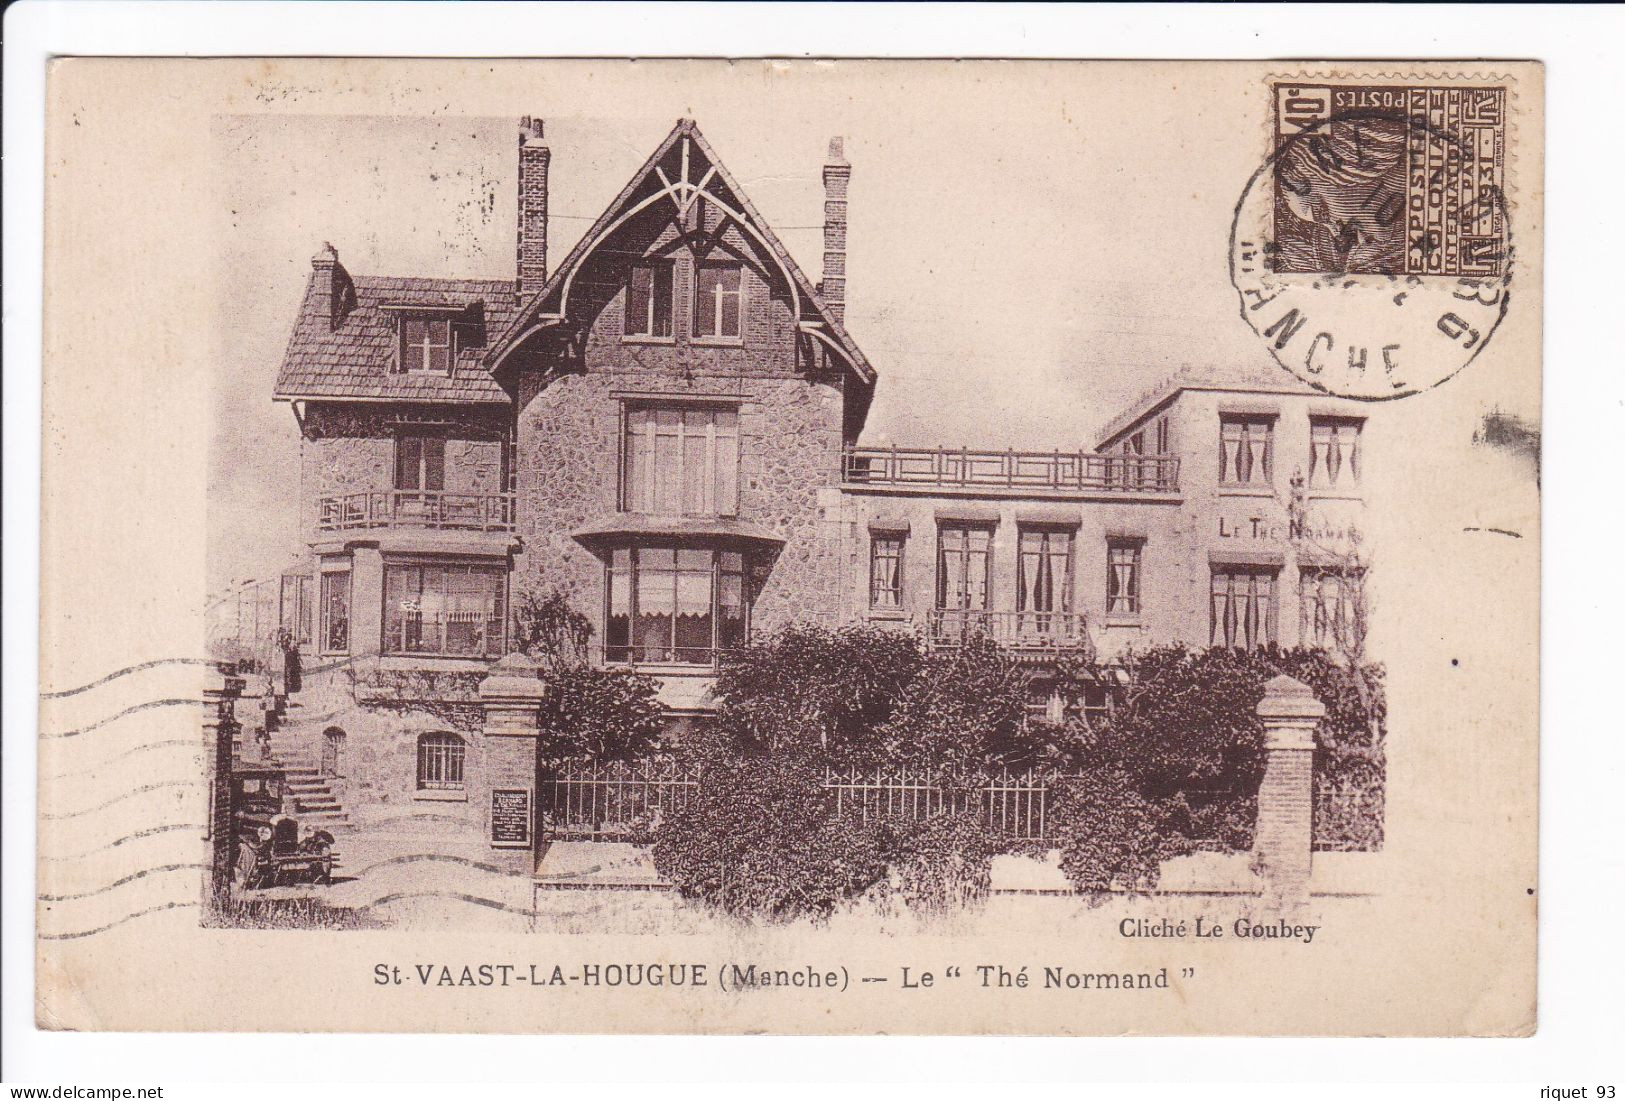 St-VAAST-LA-HOUGUE - Le "Thé Normand" (restaurant) - Saint Vaast La Hougue